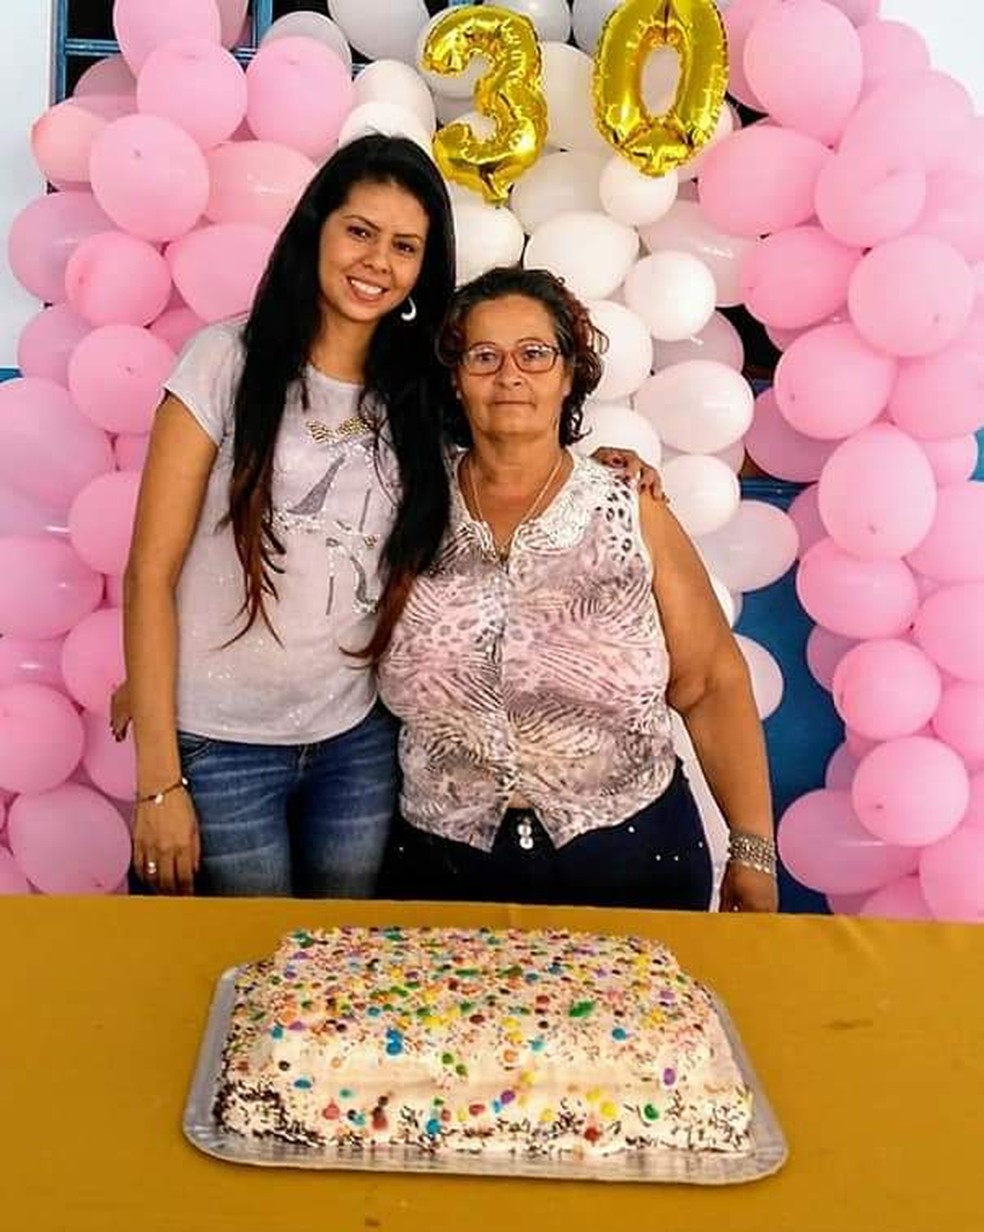 Luciana e a mãe em seu aniversário em 2018. Nilce foi morta pelo marido 13 dias antes do aniversário da filha em 2019. — Foto: Arquivo pessoal